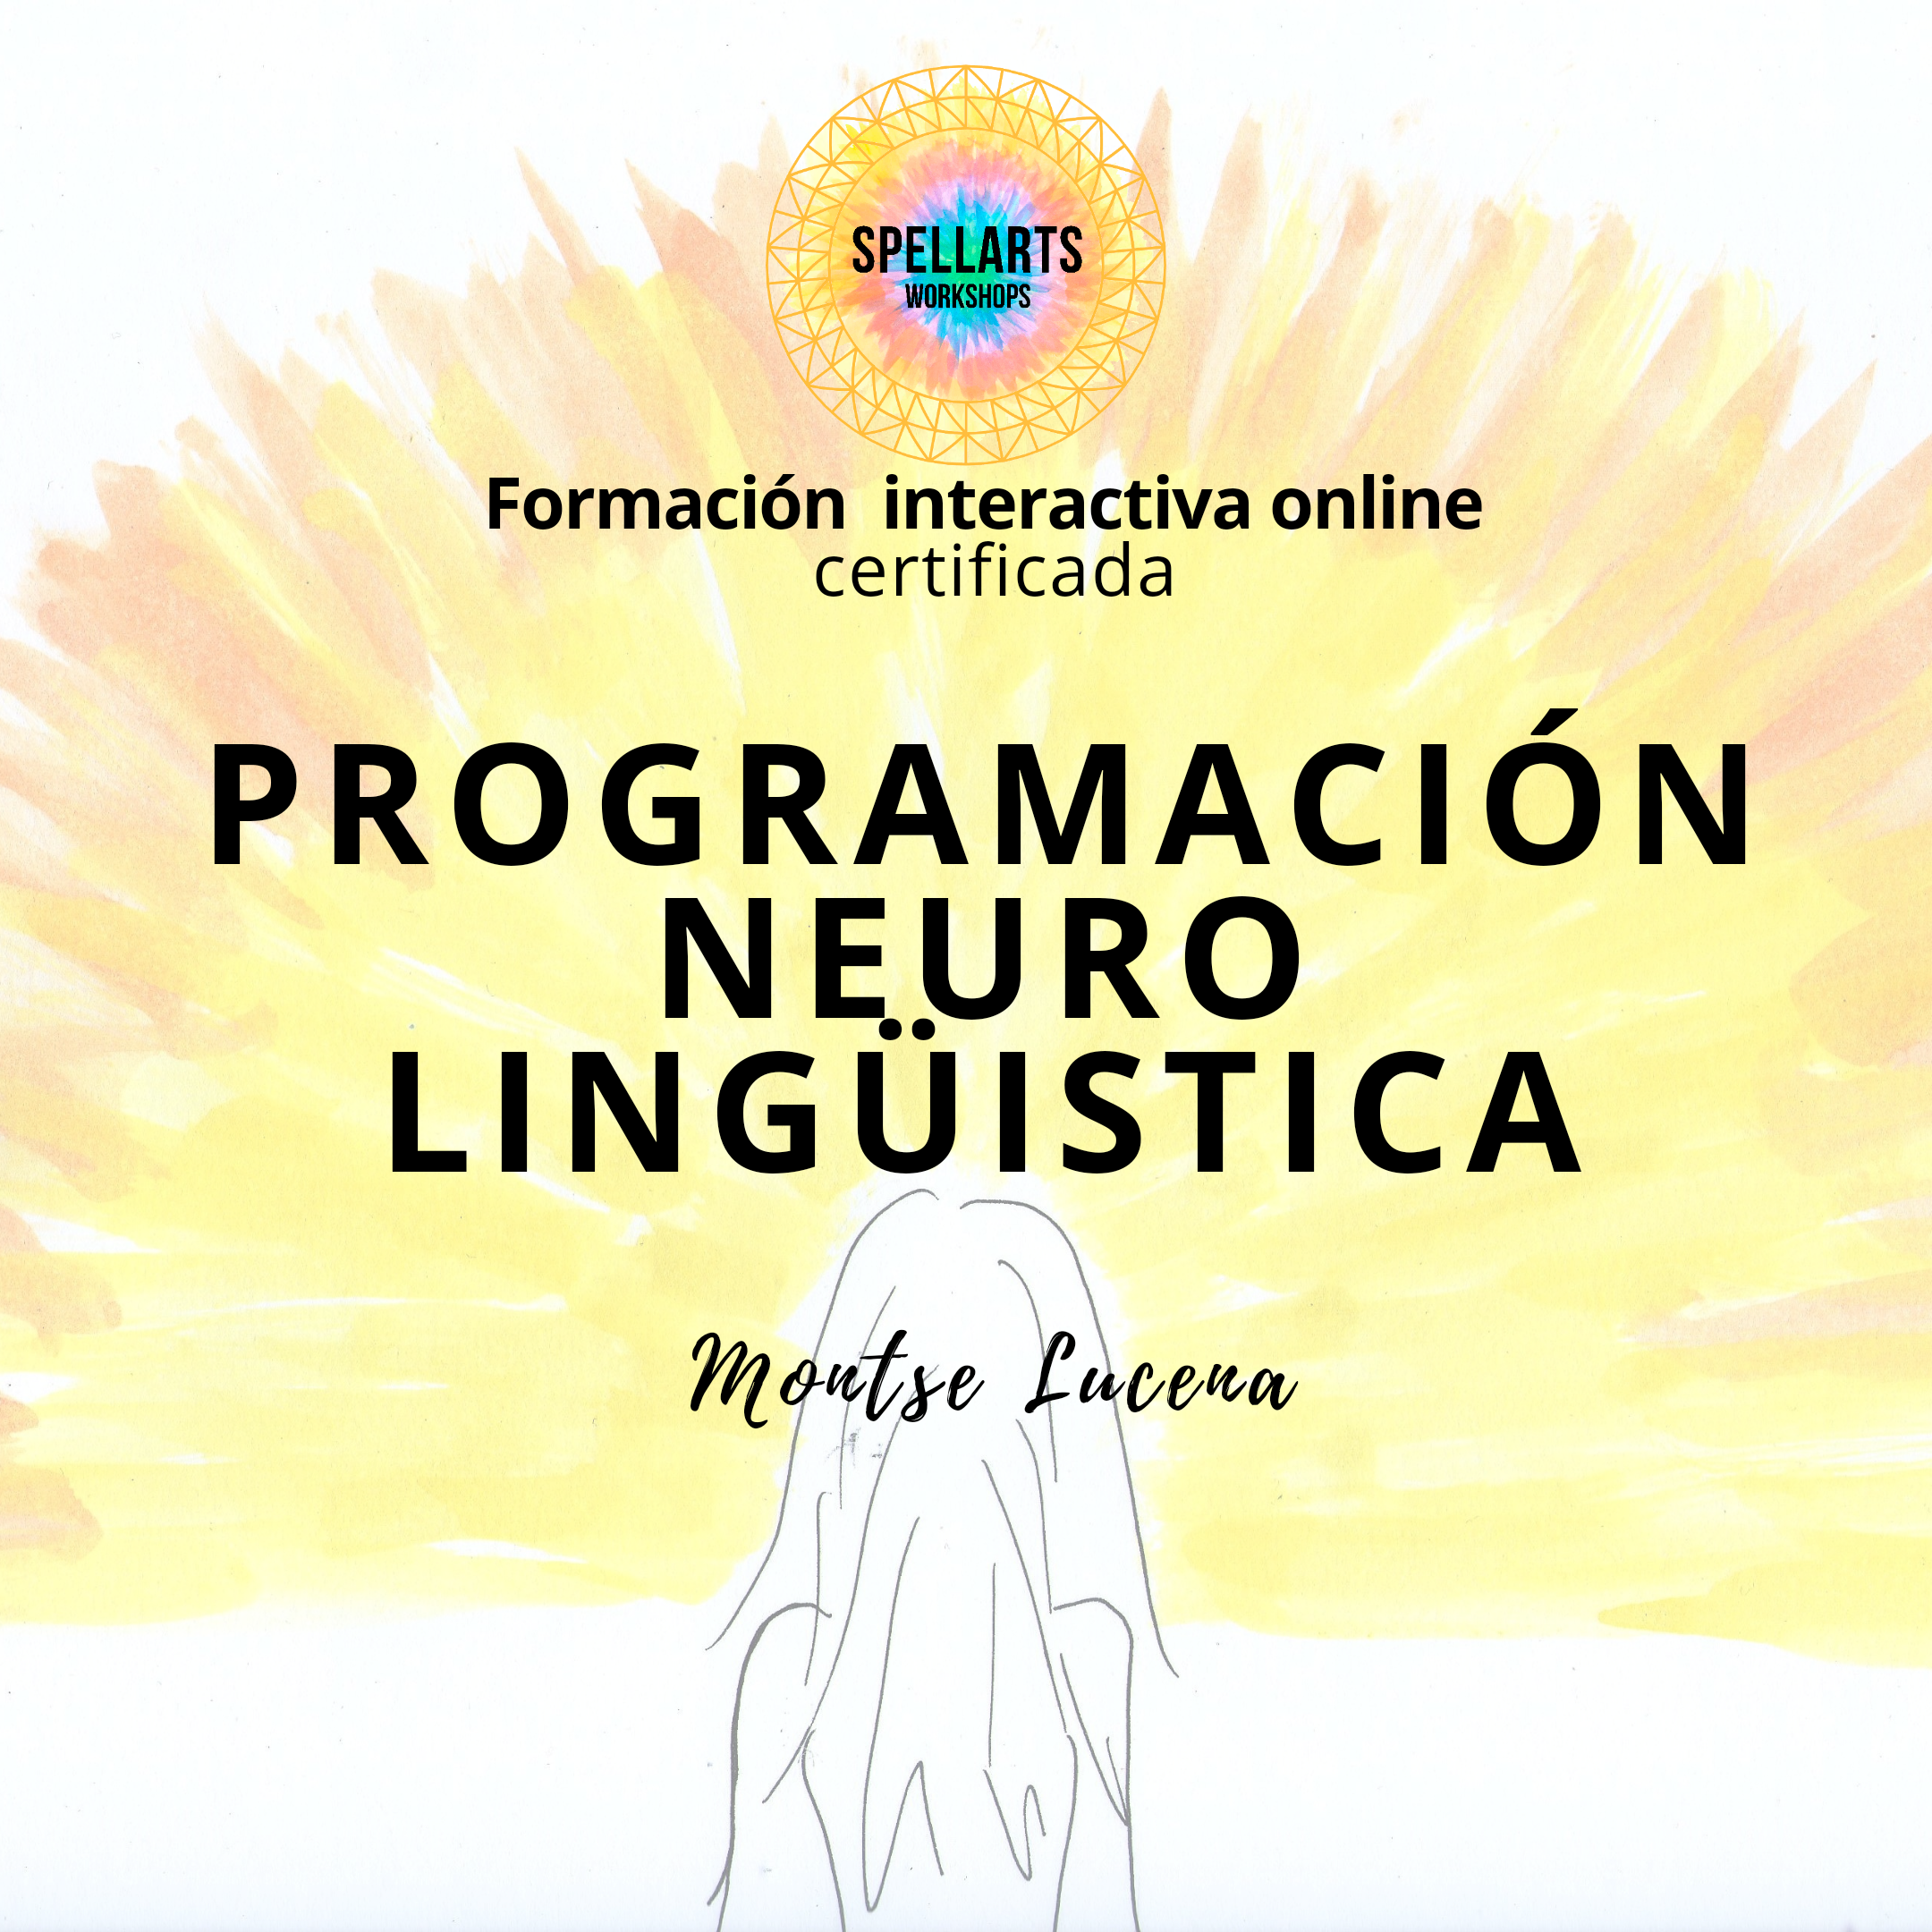 Curso programación neurolingüística pnl Montse Lucena Spellarts